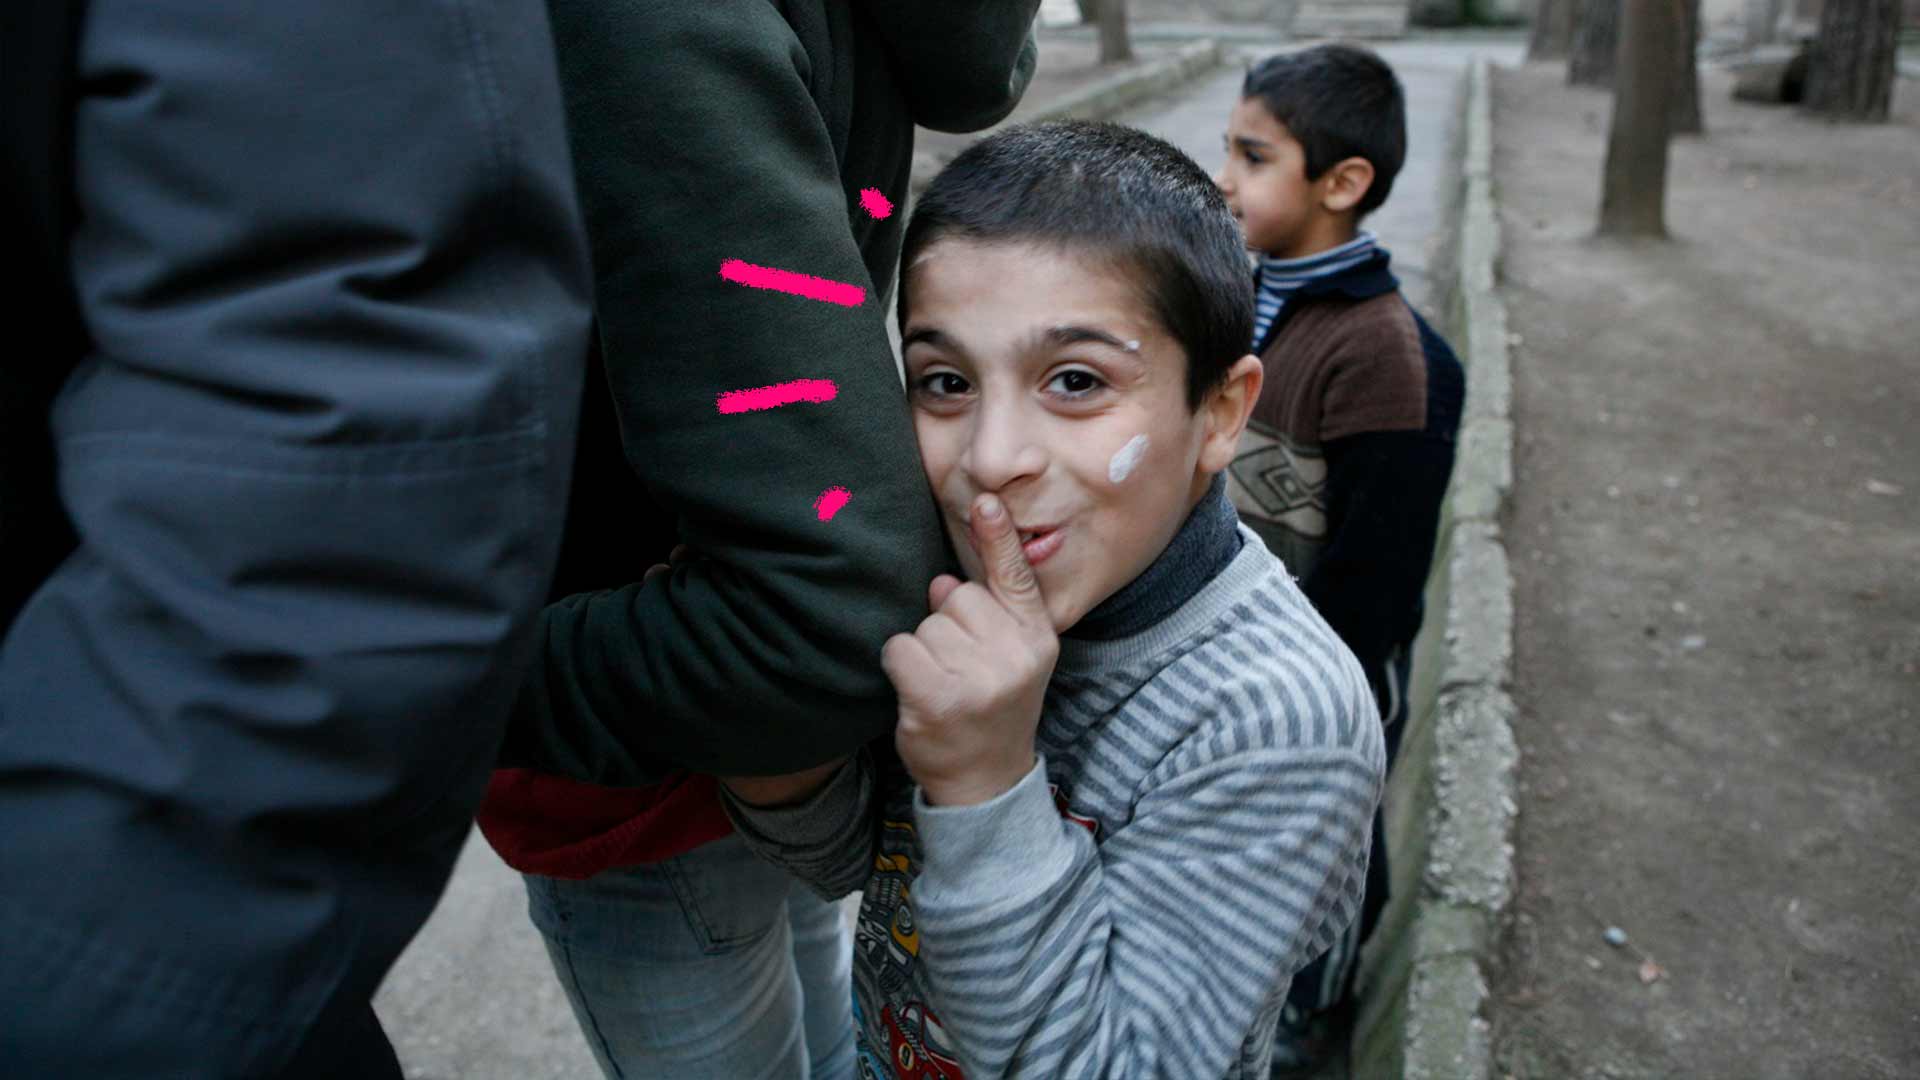 Foto de um menino com o dedo na boca fazendo sinal de silêncio. O menino está escondido atrás de um adulto com os braços dados